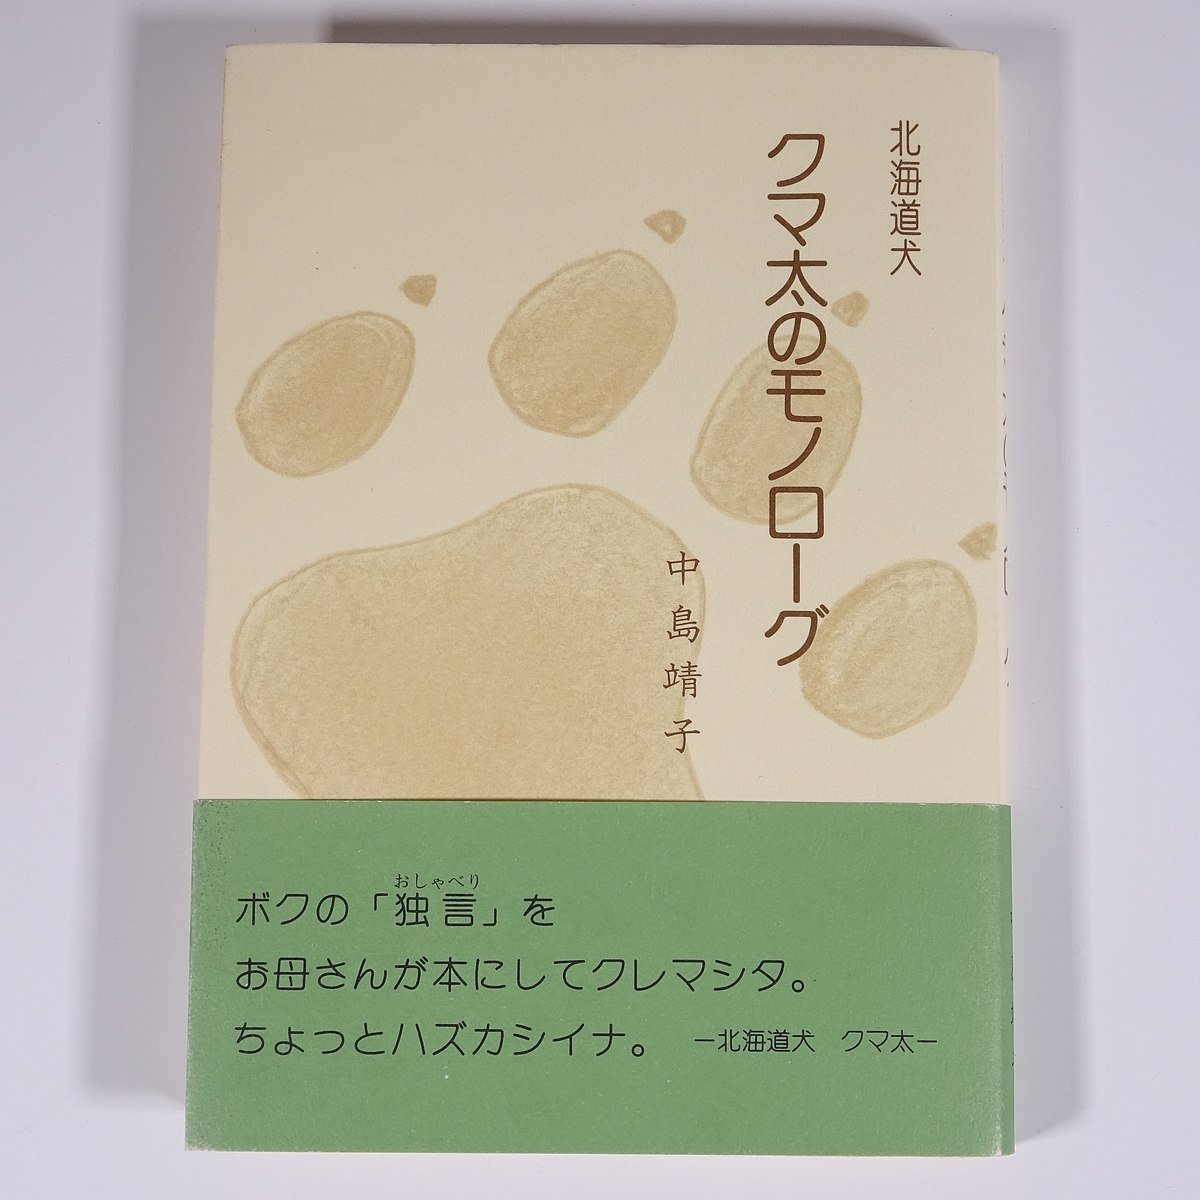  Hokkaido собака медведь futoshi. моно low g средний остров .. правильный . Японская музыка .2002 с лентой монография домашнее животное животное собака собака ..